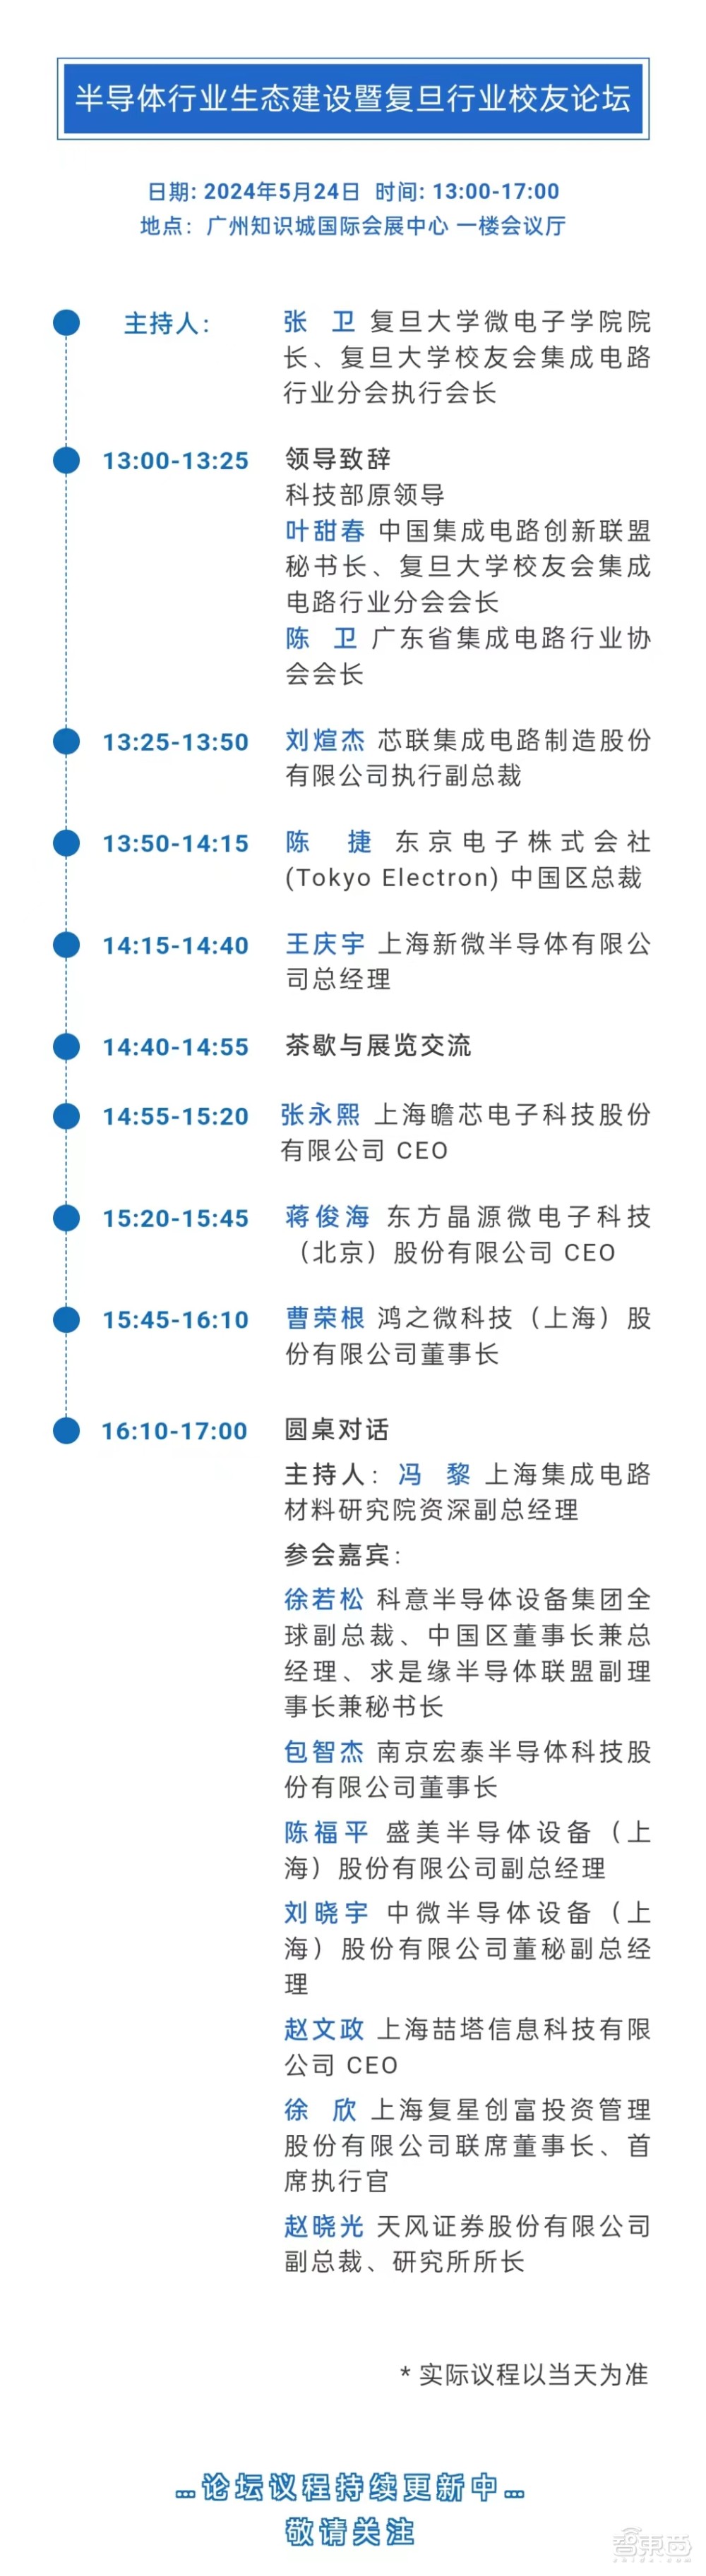 最新完整议程！集成电路制造年会5月22-24日广州开幕